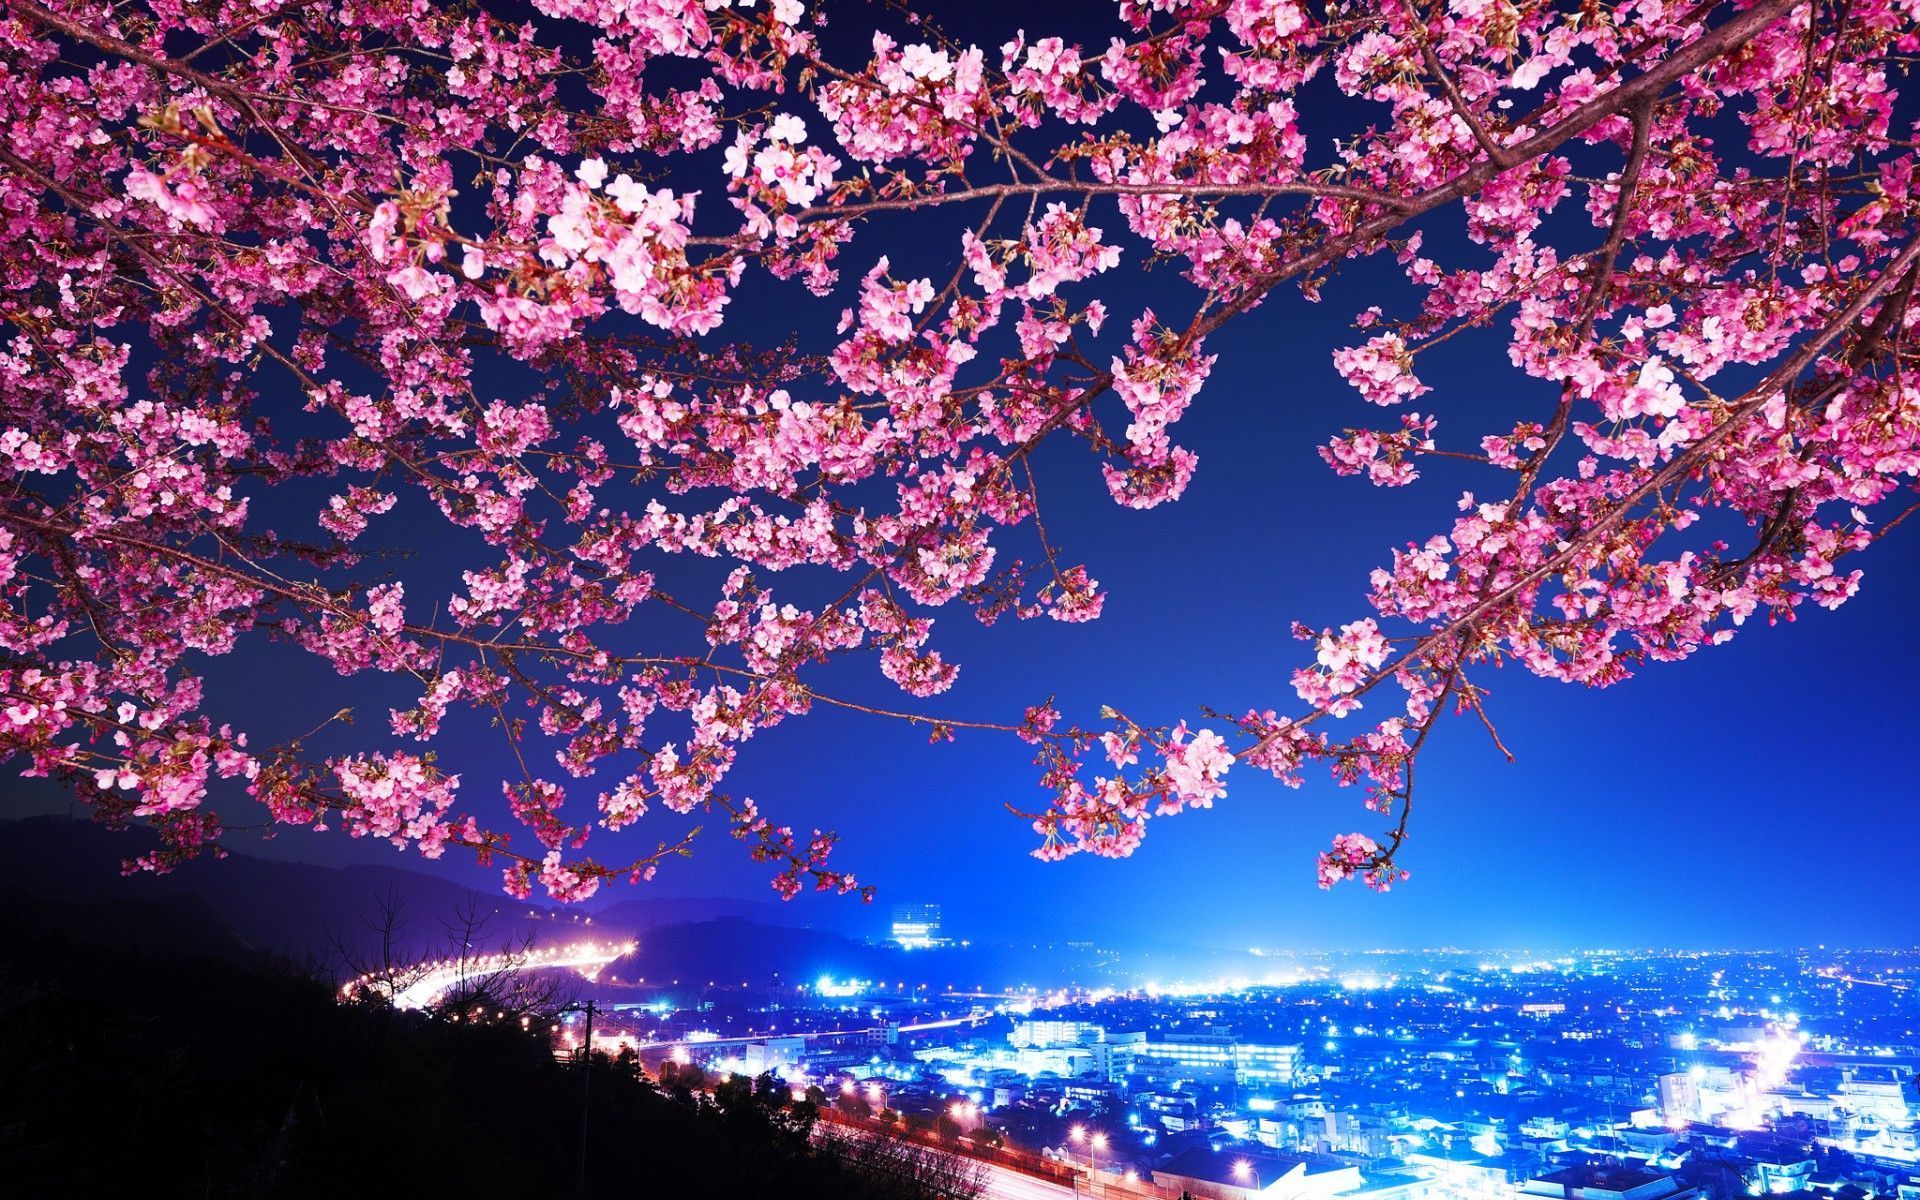 Cherry Blossom Tree At Night Wallpaper - wallpaper.